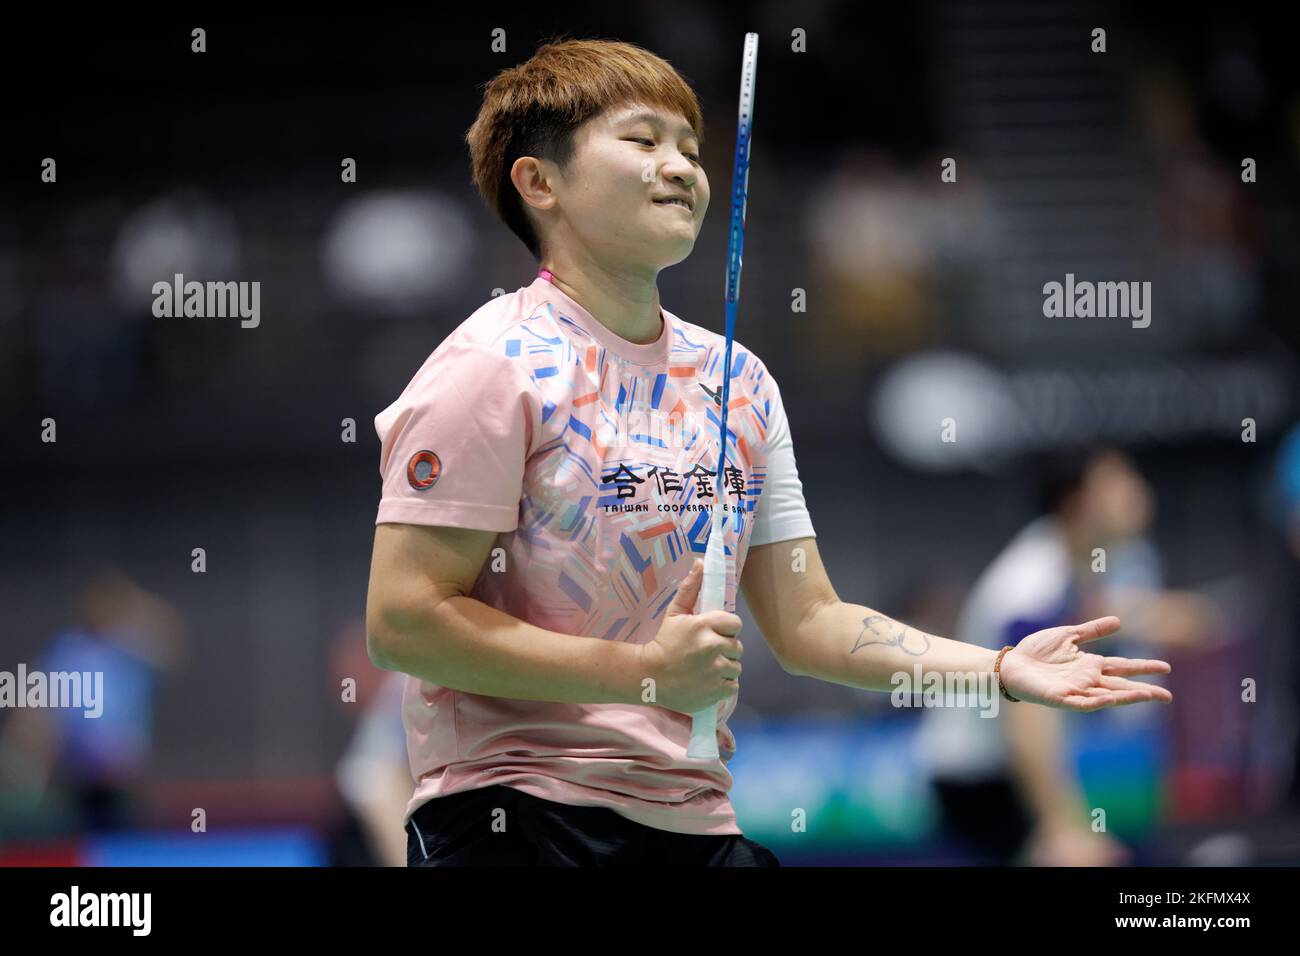 SYDNEY, AUSTRALIE - NOVEMBRE 17 : WAN Ching Lin de Taipei en action pendant le match mixte de doubles entre le Japon et Taipei à Quaycenter sur 17 novembre 2022 à Sydney, en Australie Banque D'Images